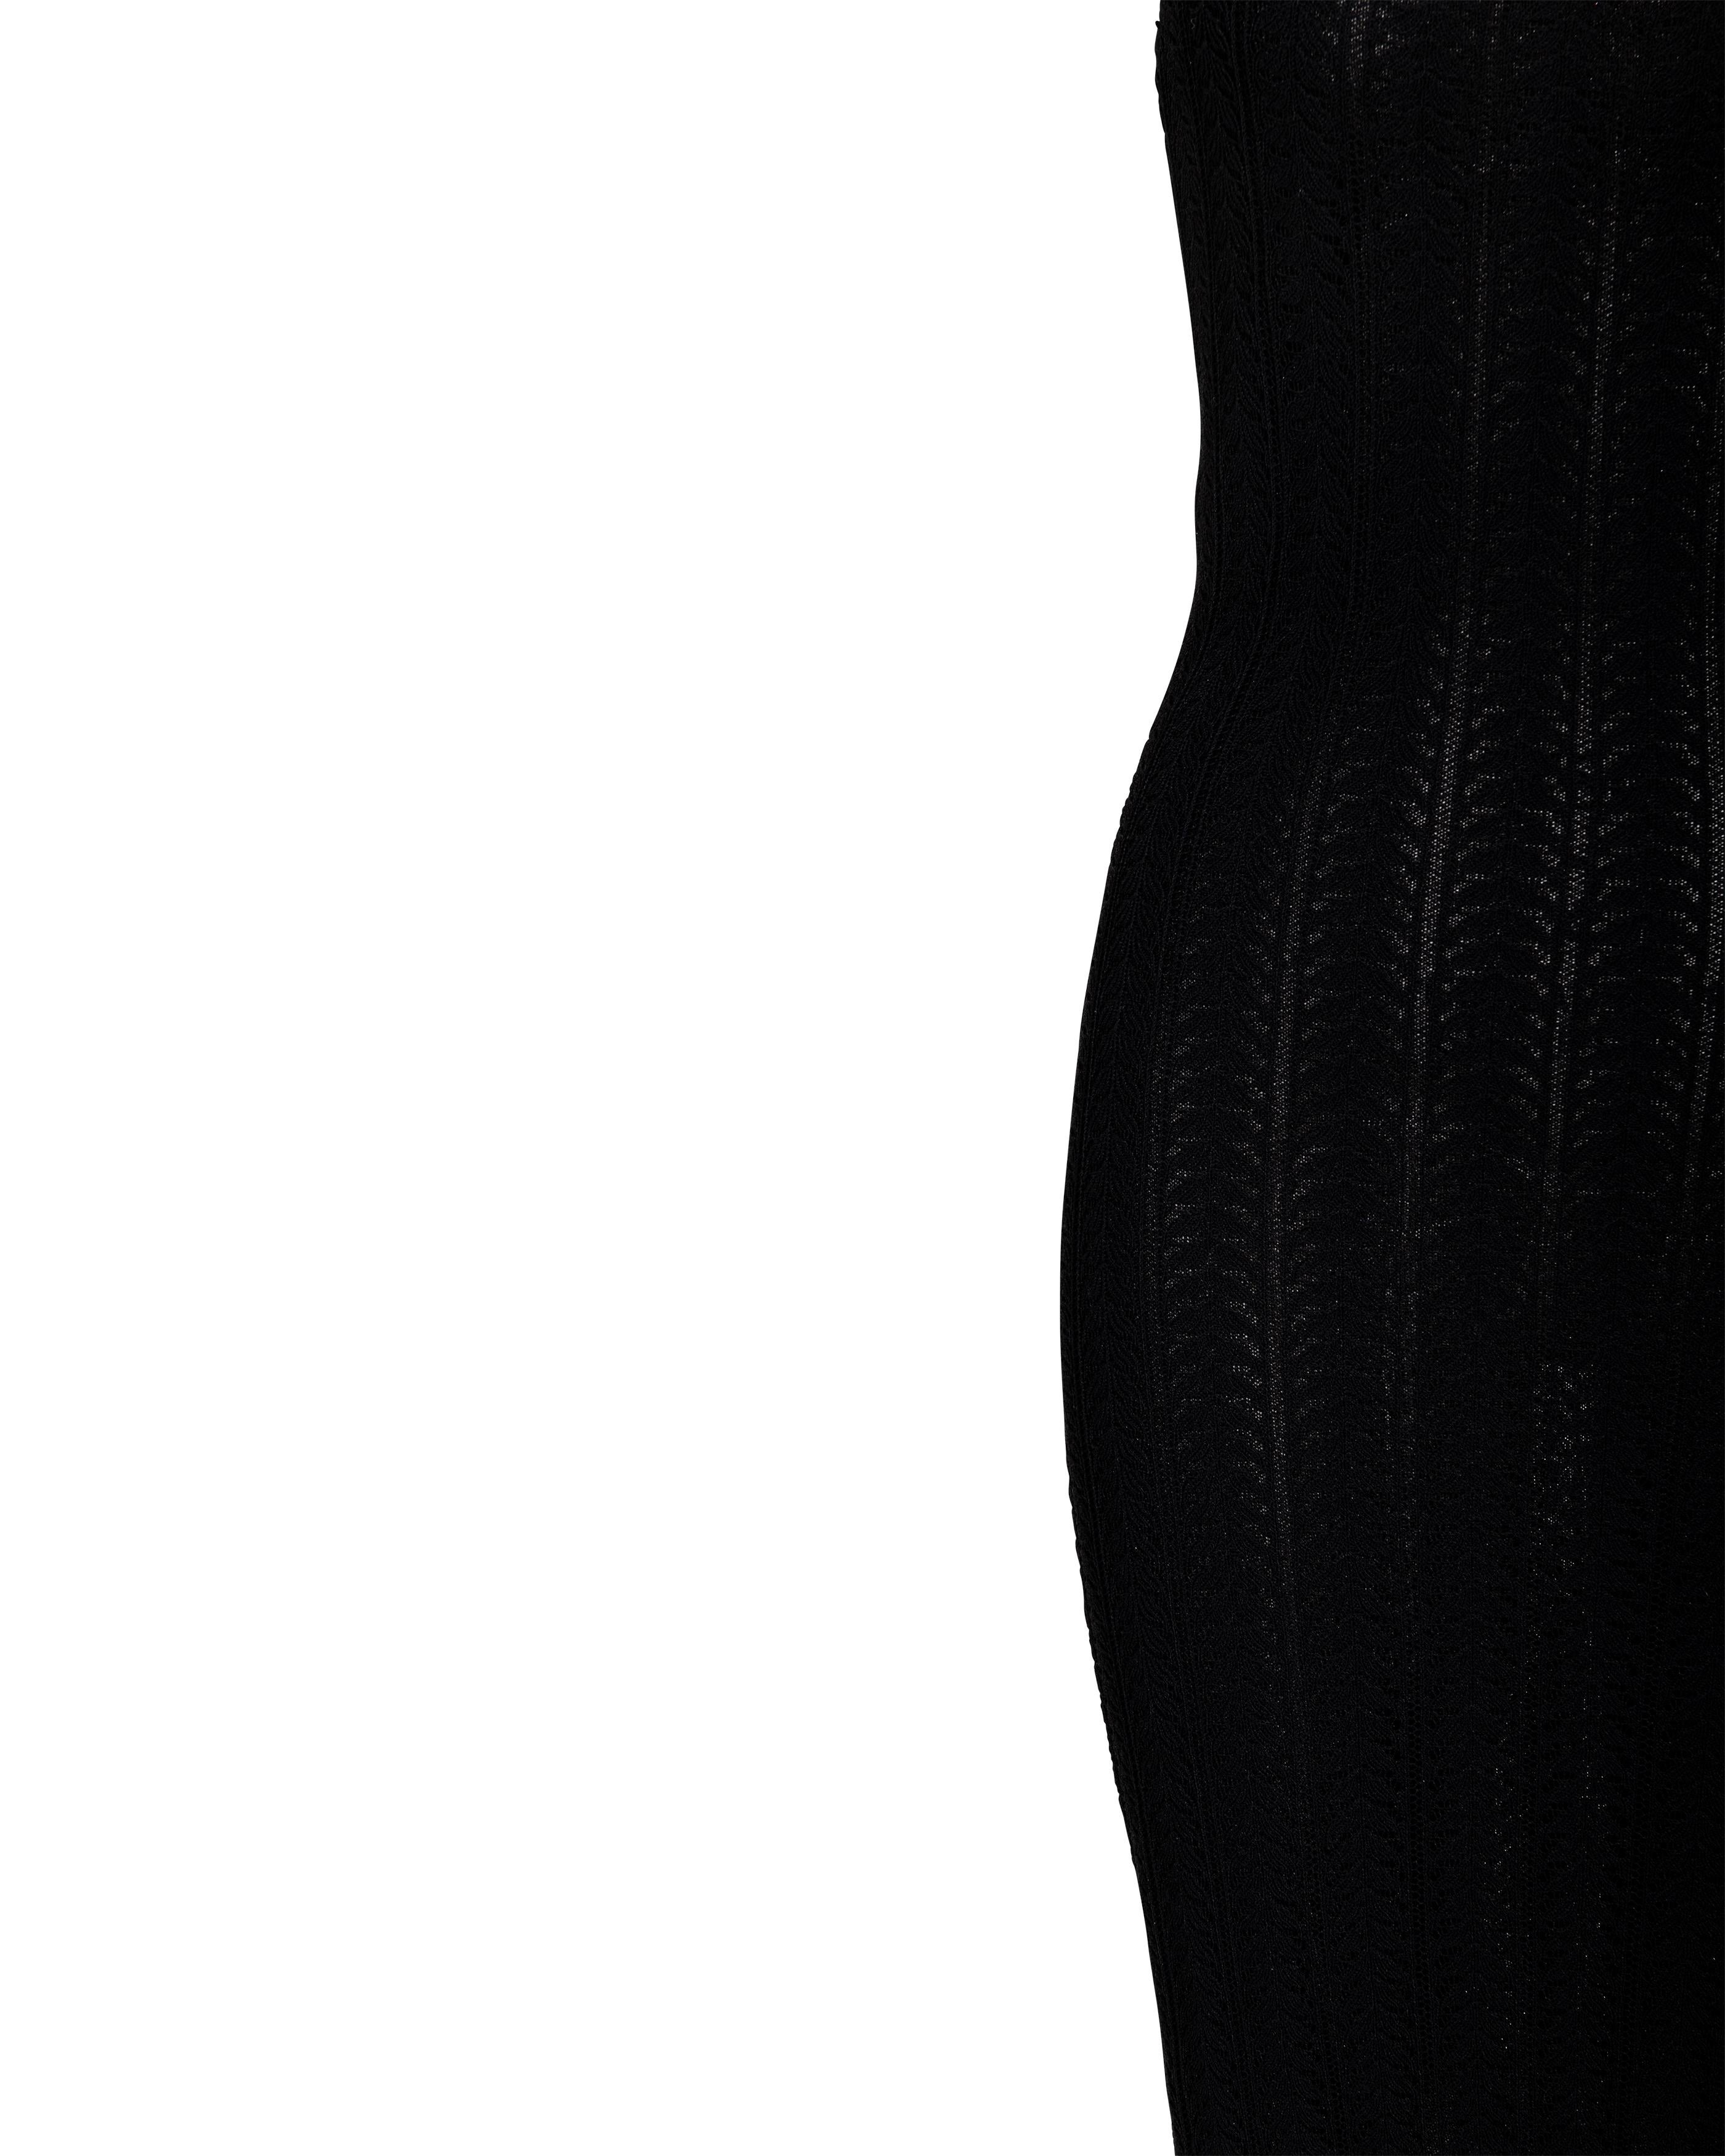 Resort 2000 John Galliano Black Openwork Knit Knee-Length Slip Dress For Sale 2